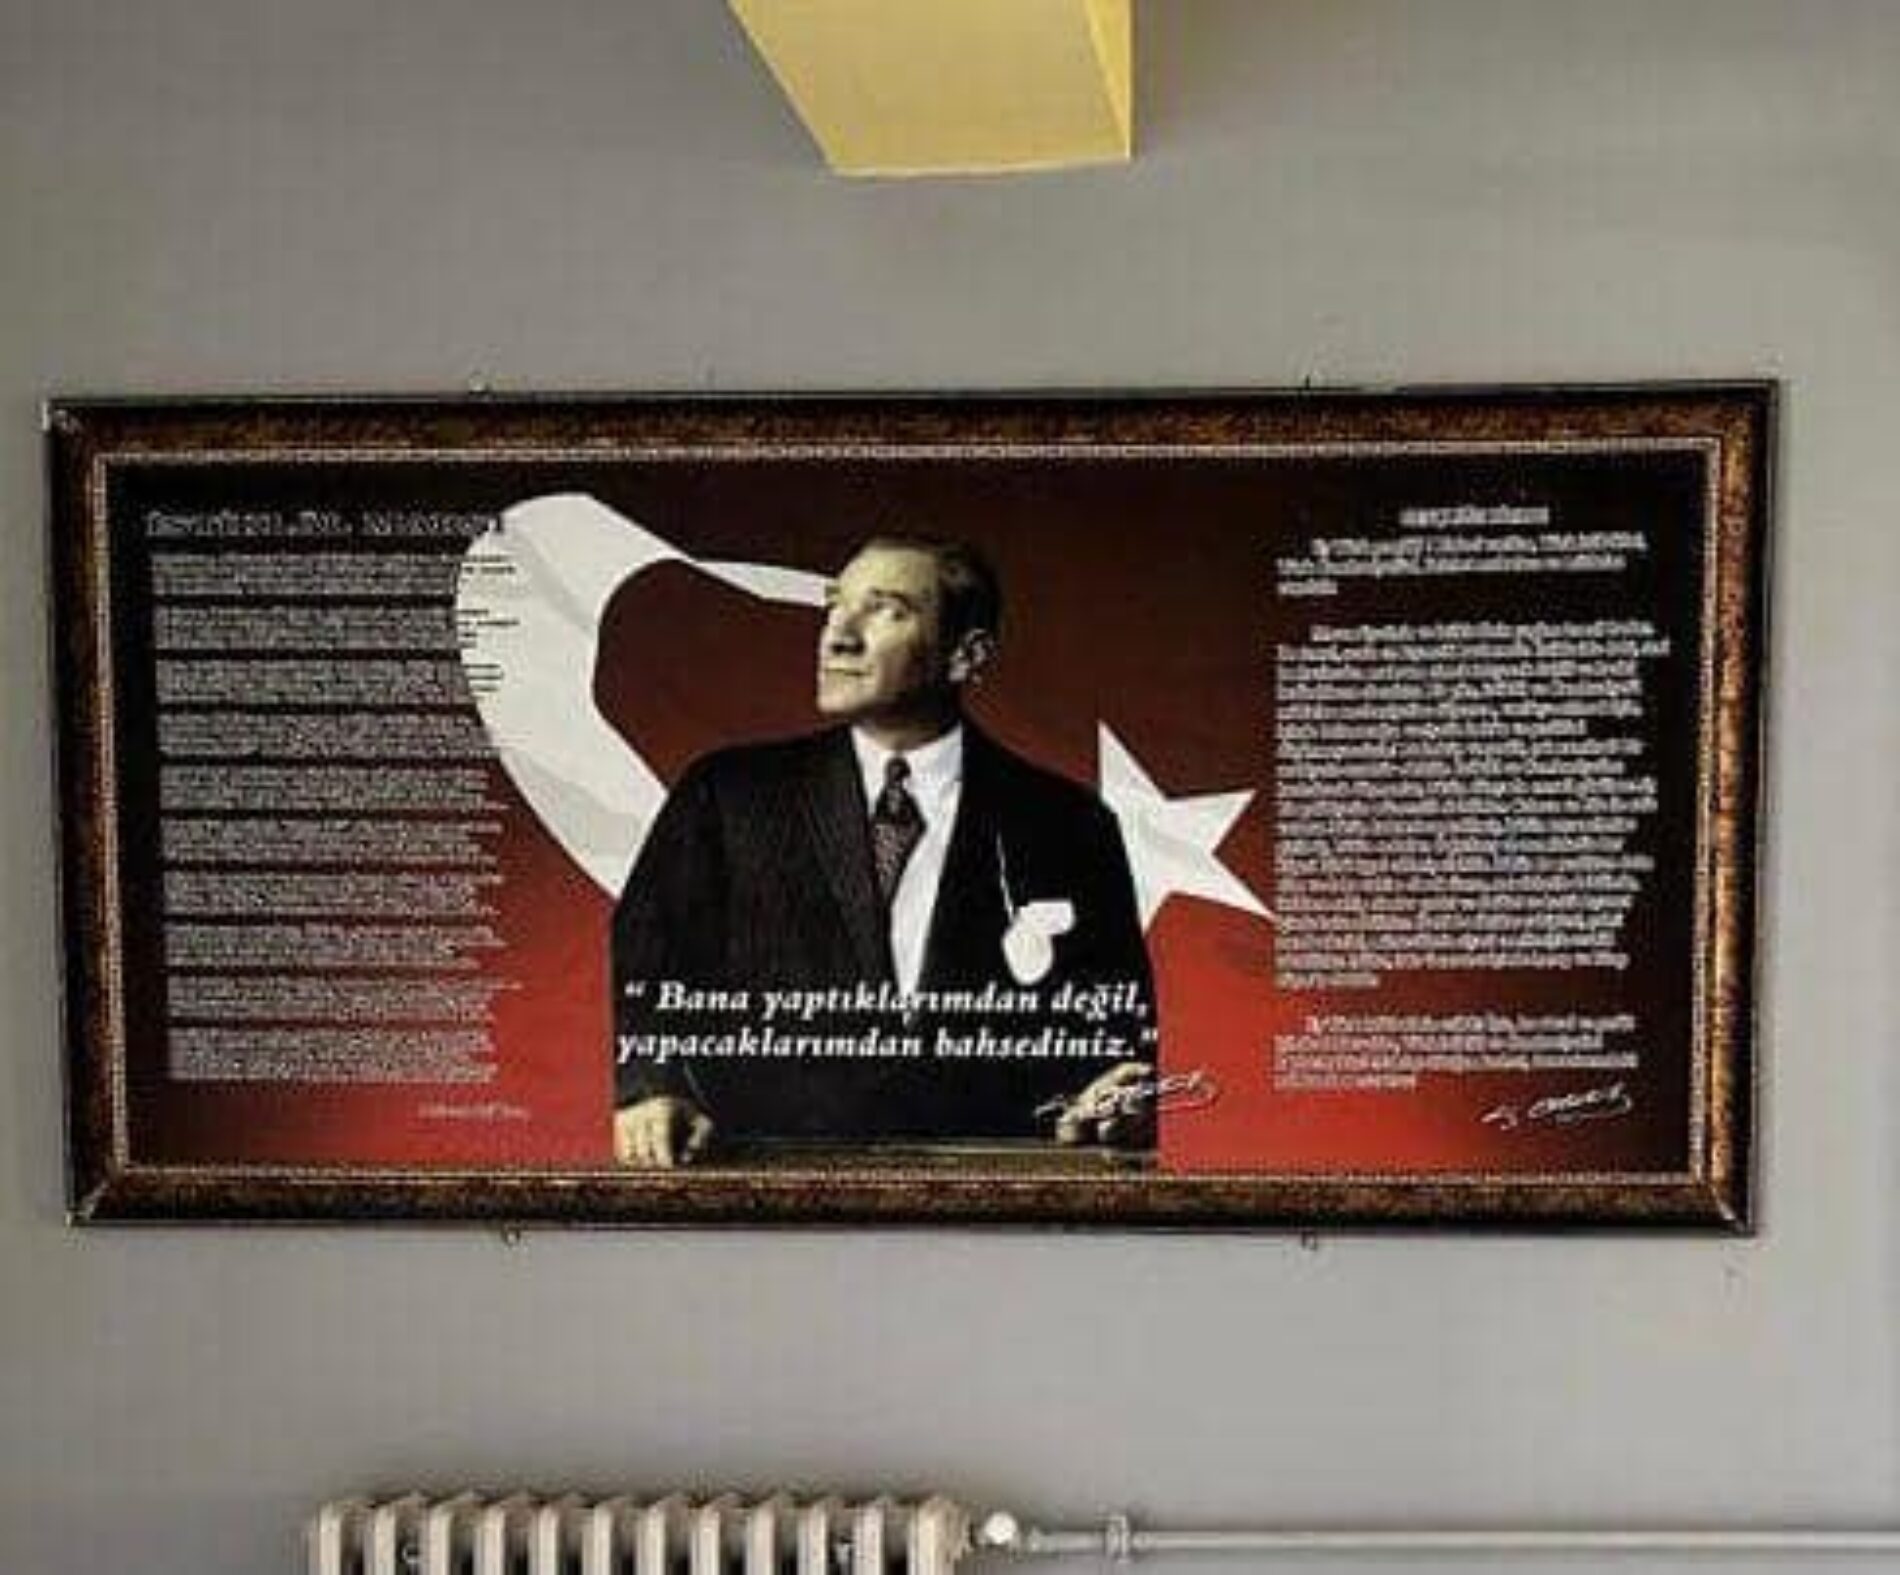 TYSD Bakırköy Şubemiz Cumhuriyetimizin 100. Yılını Kutlamaktadır